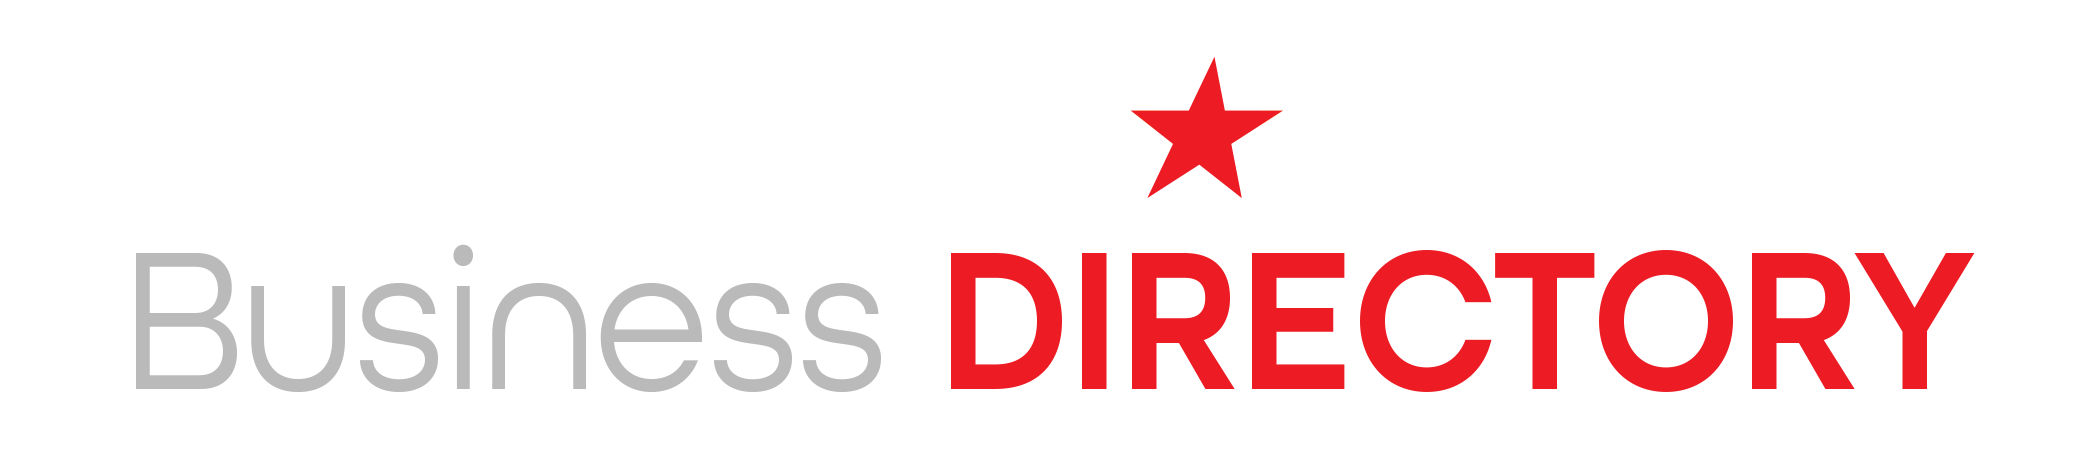 Dairy Star